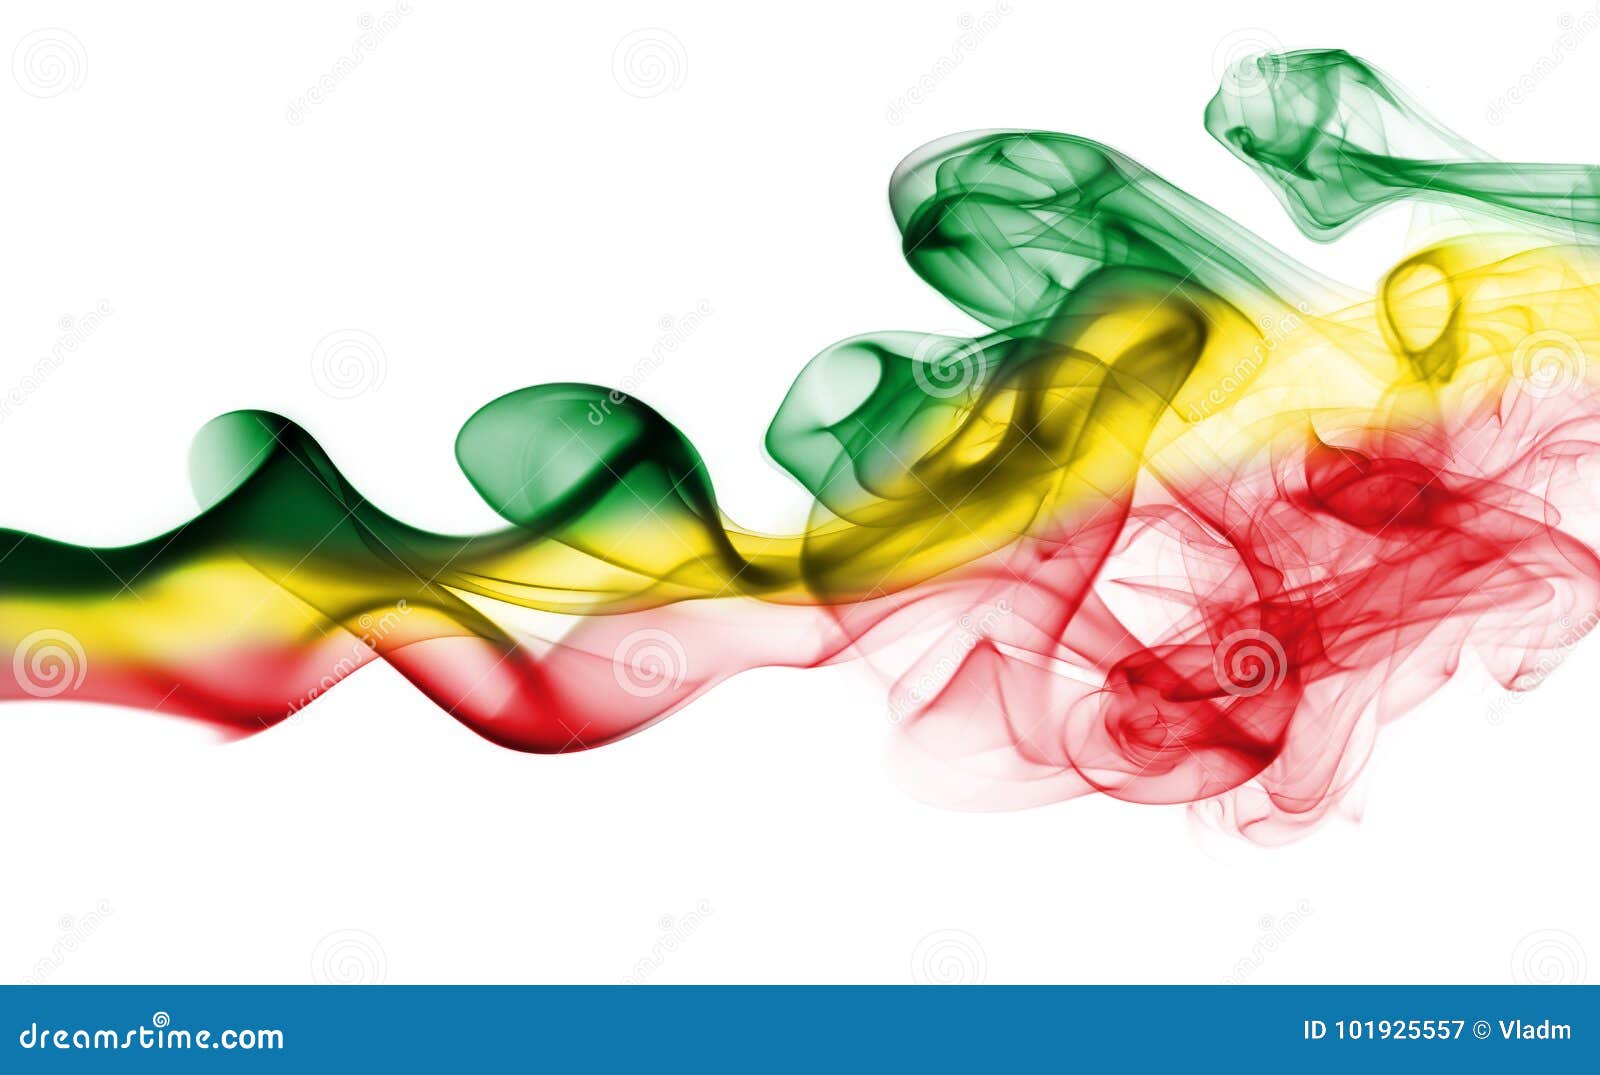 ethiopia rasta national smoke flag